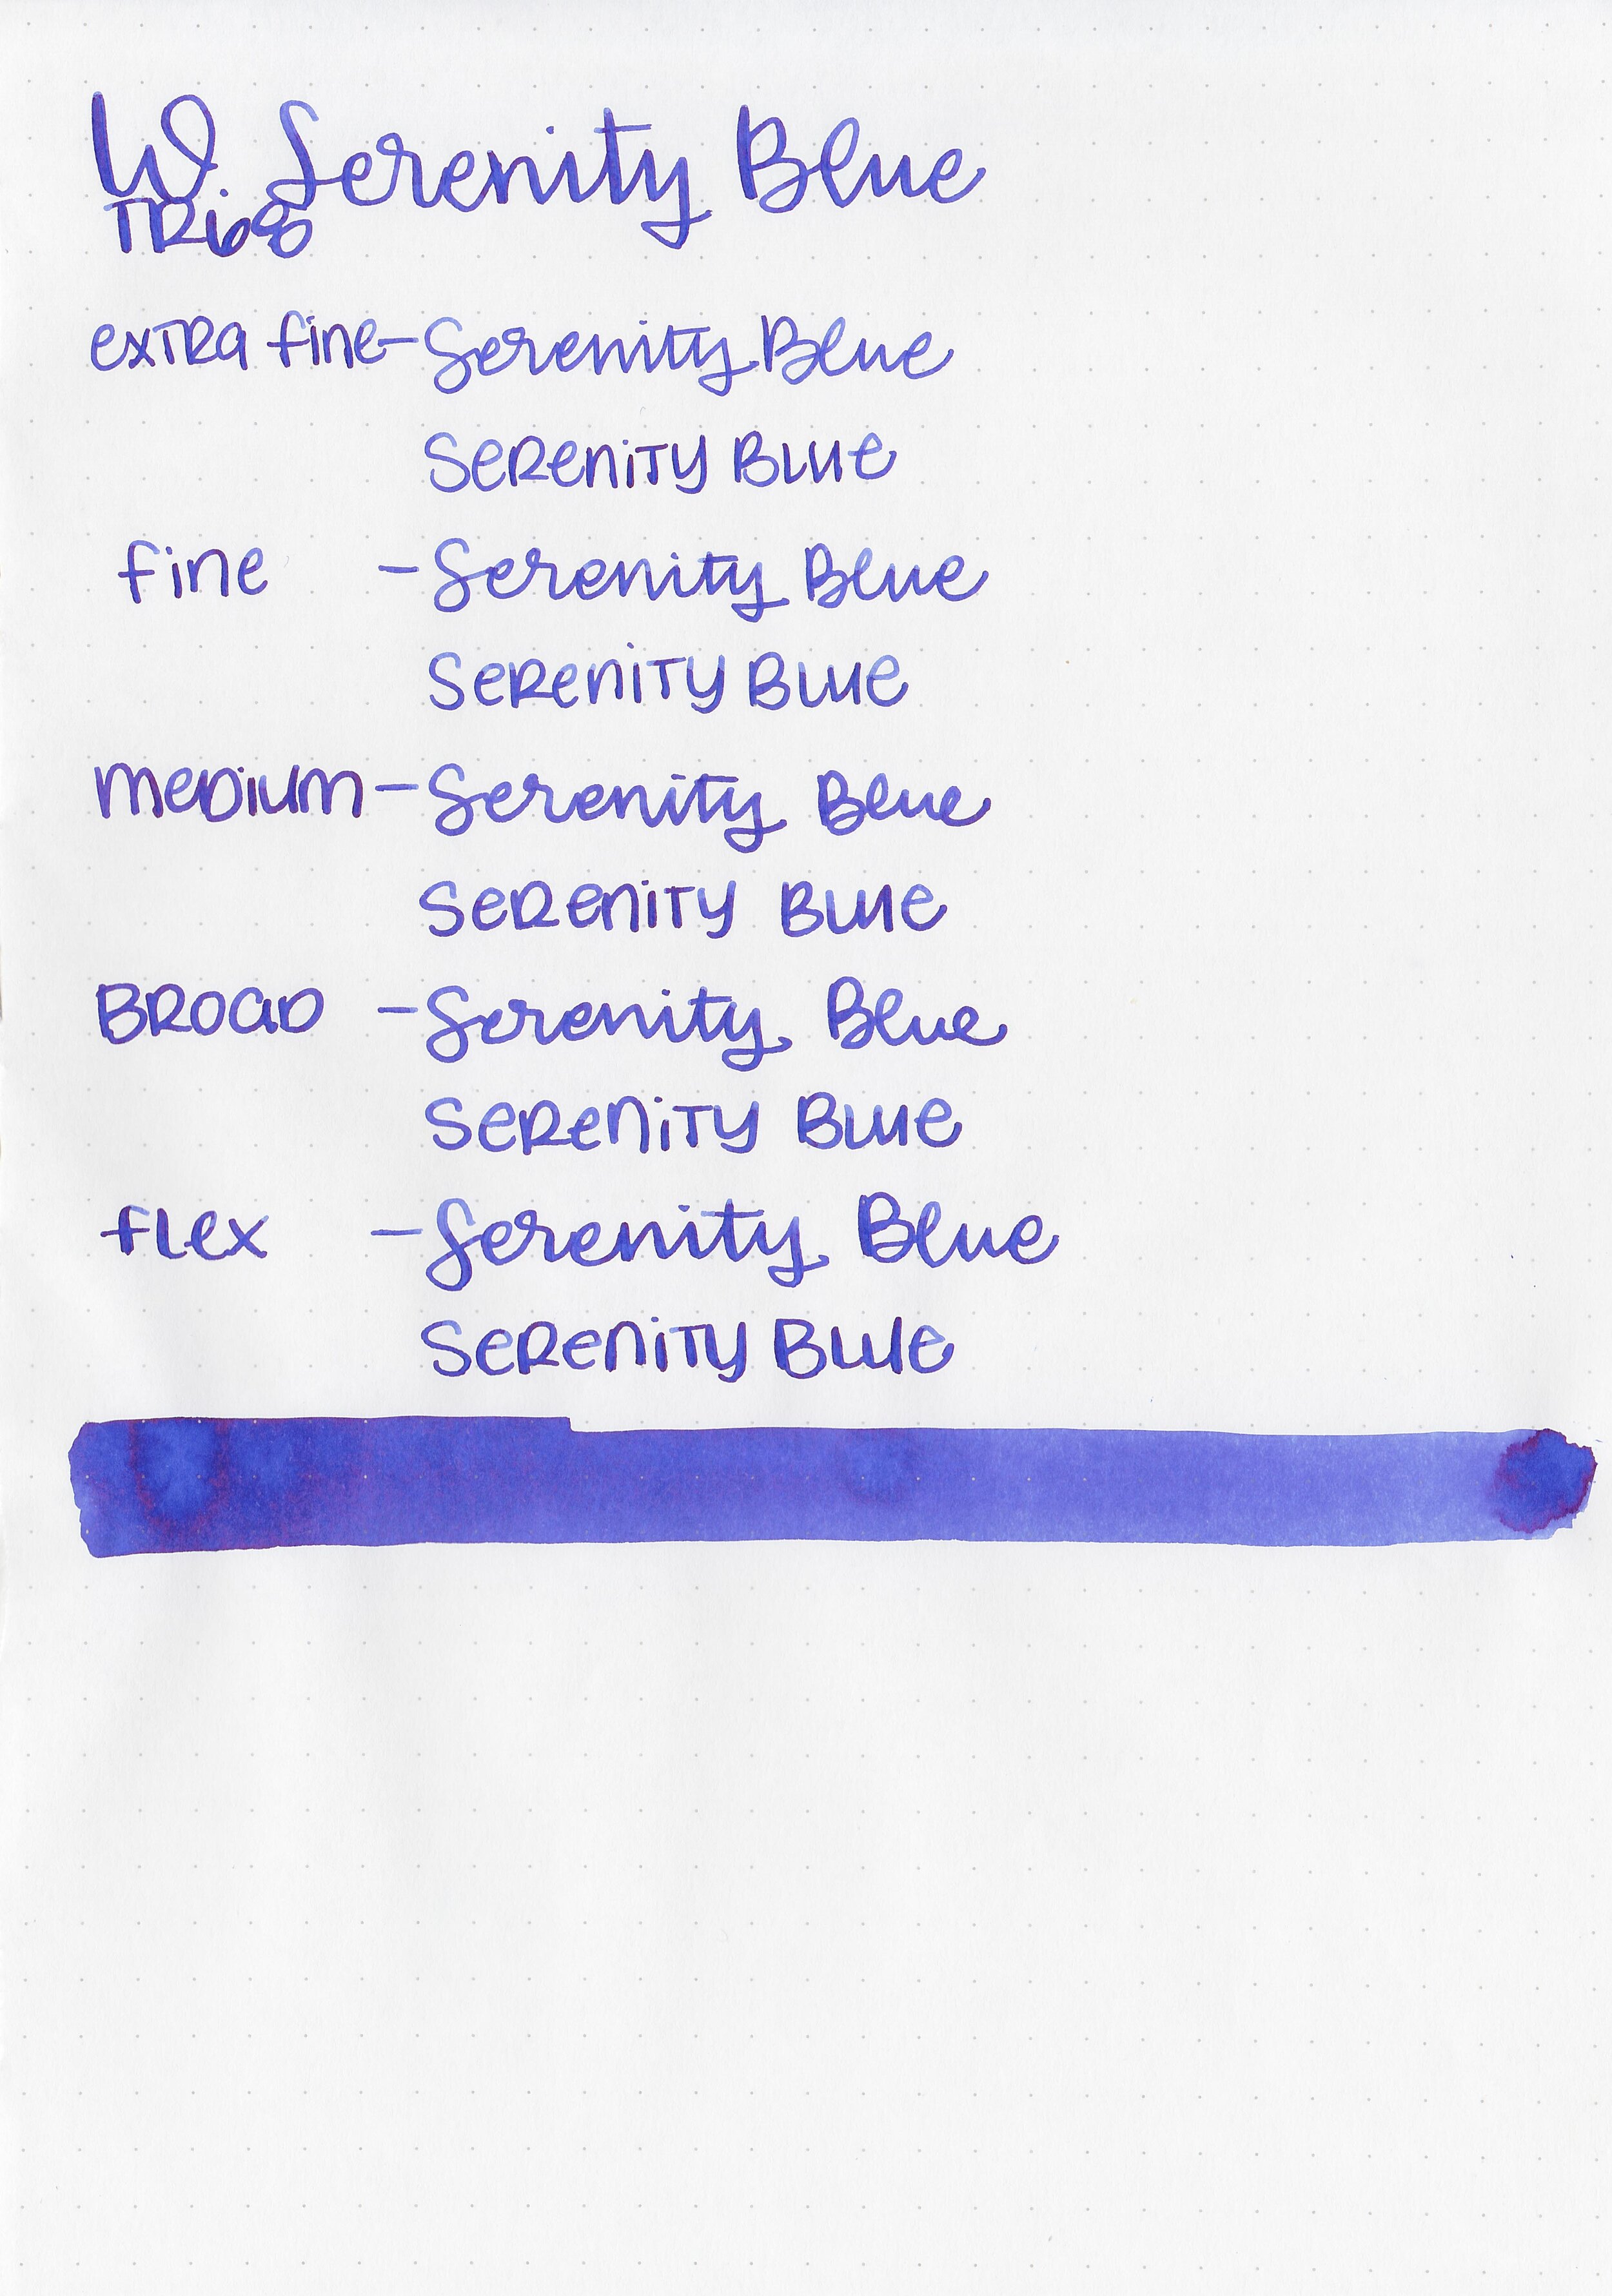 wtr-serenity-blue-6.jpg